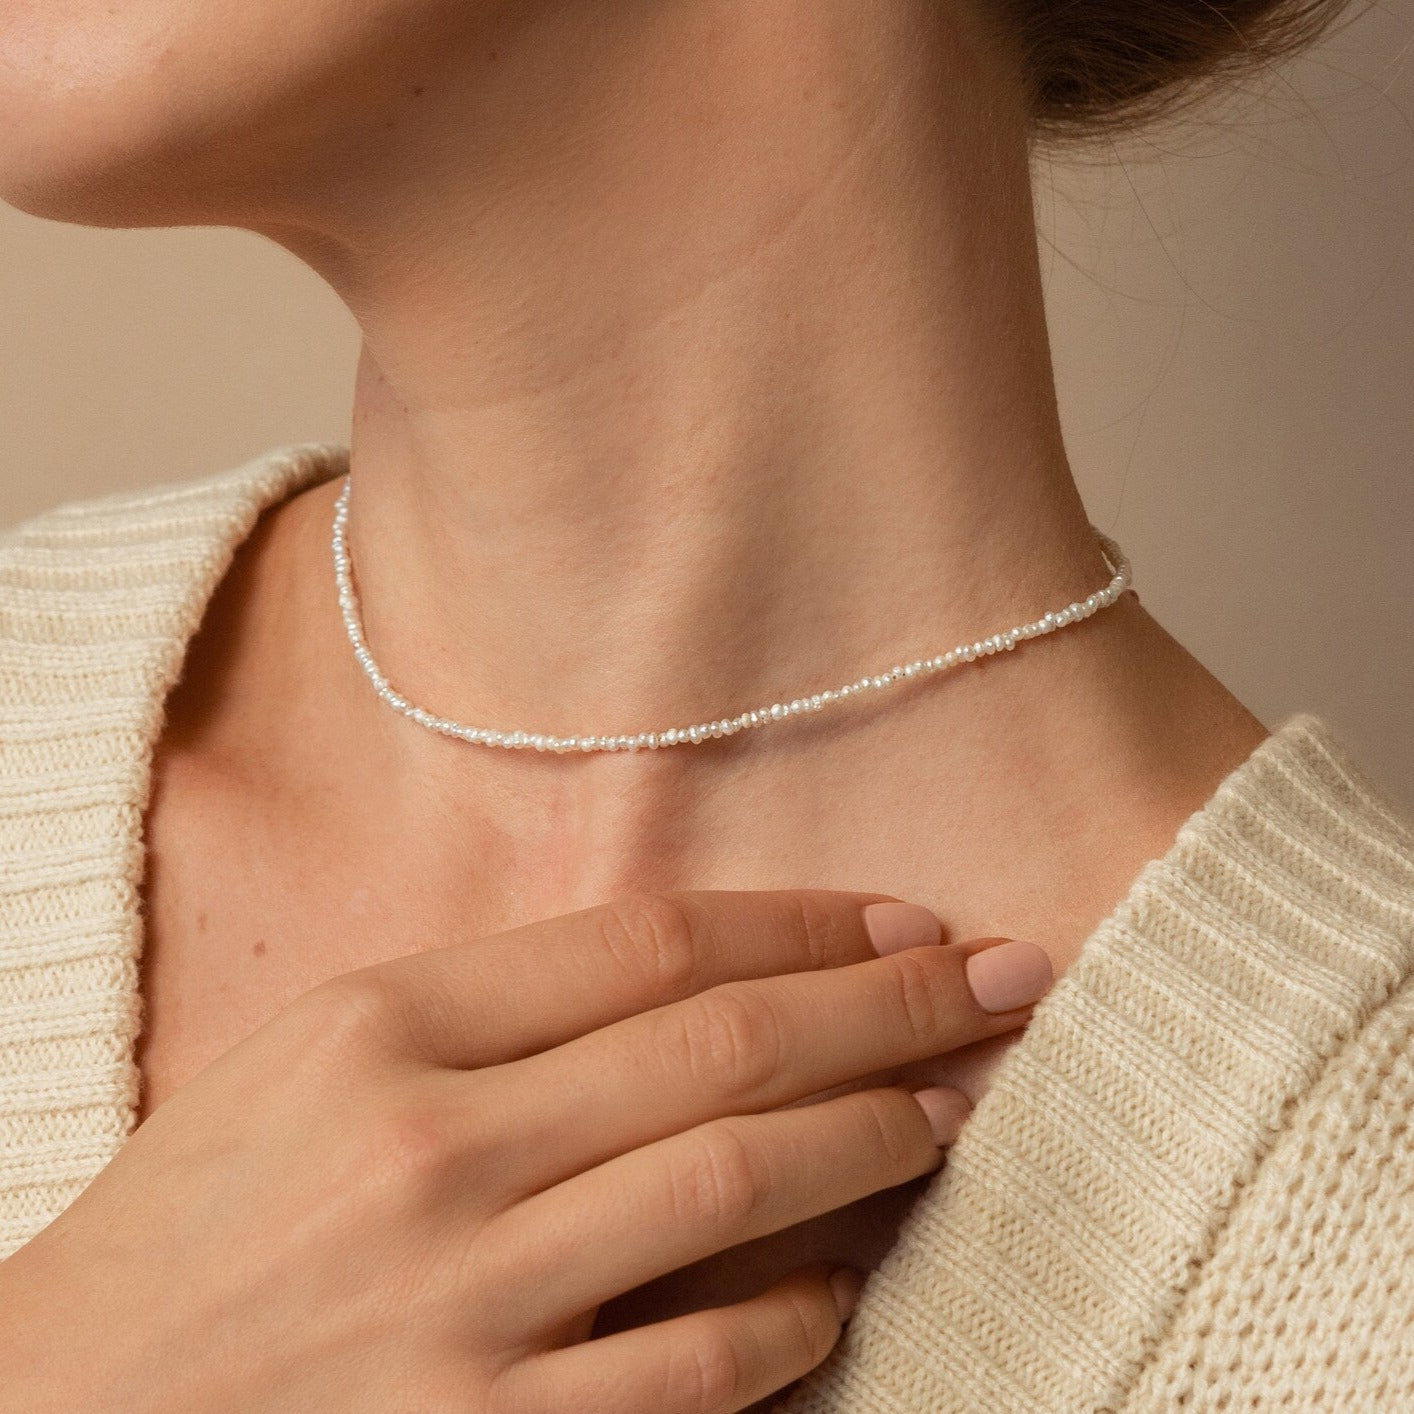 Wild rose mother of pearl pendant necklace | Les Néréides